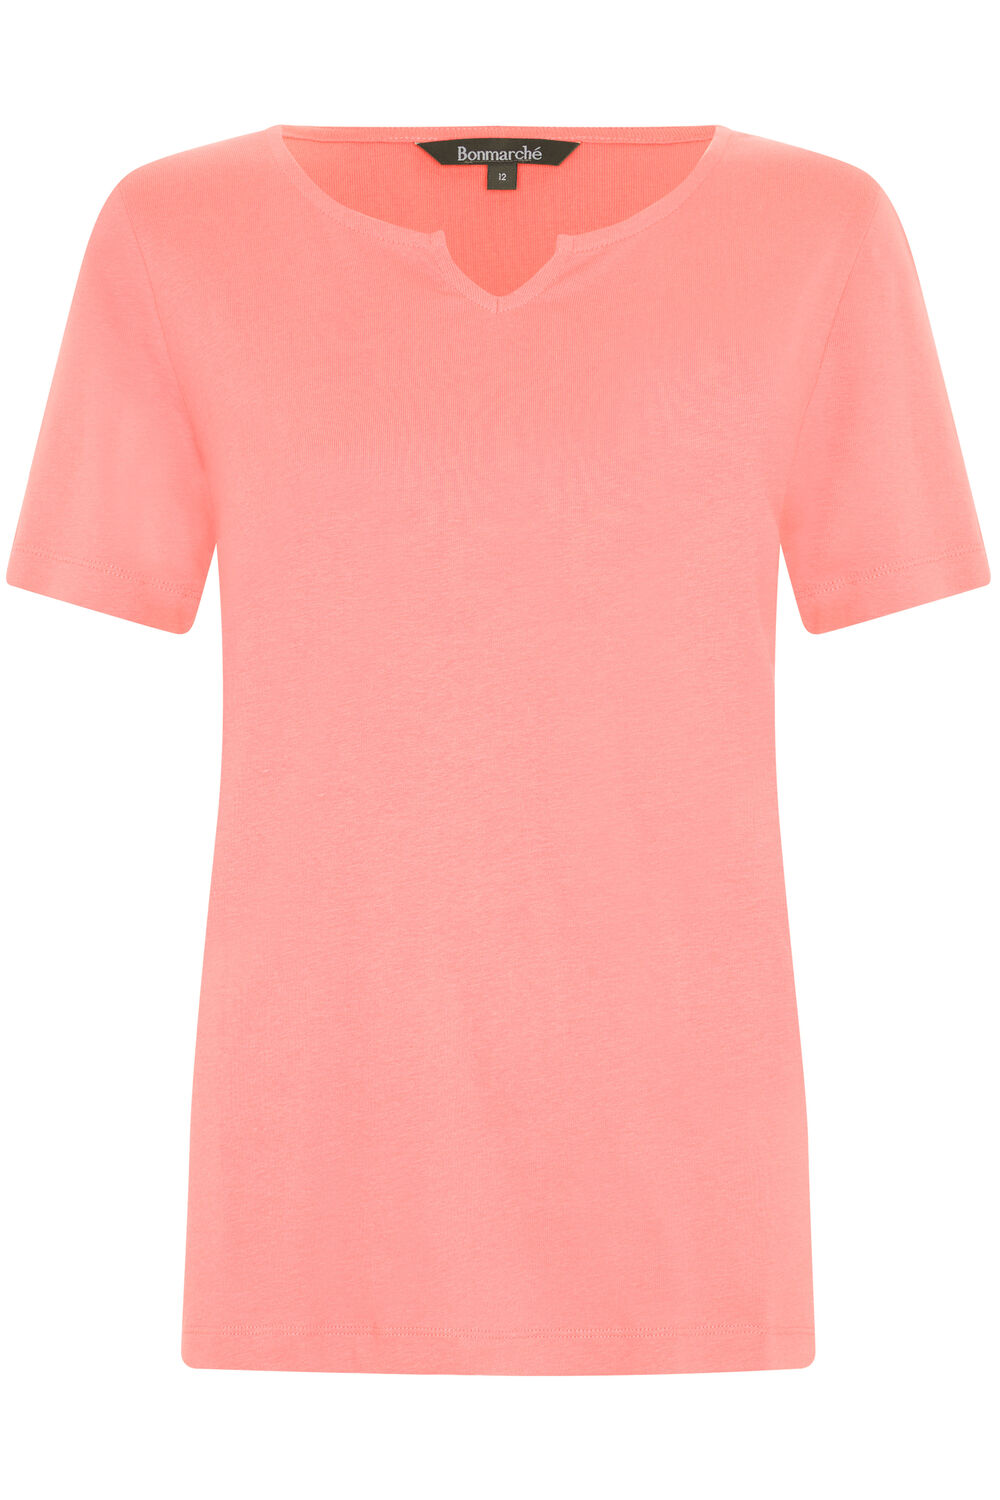 Bonmarche Coral Short Sleeve Plain Notch Neck T-Shirt, Size: 26